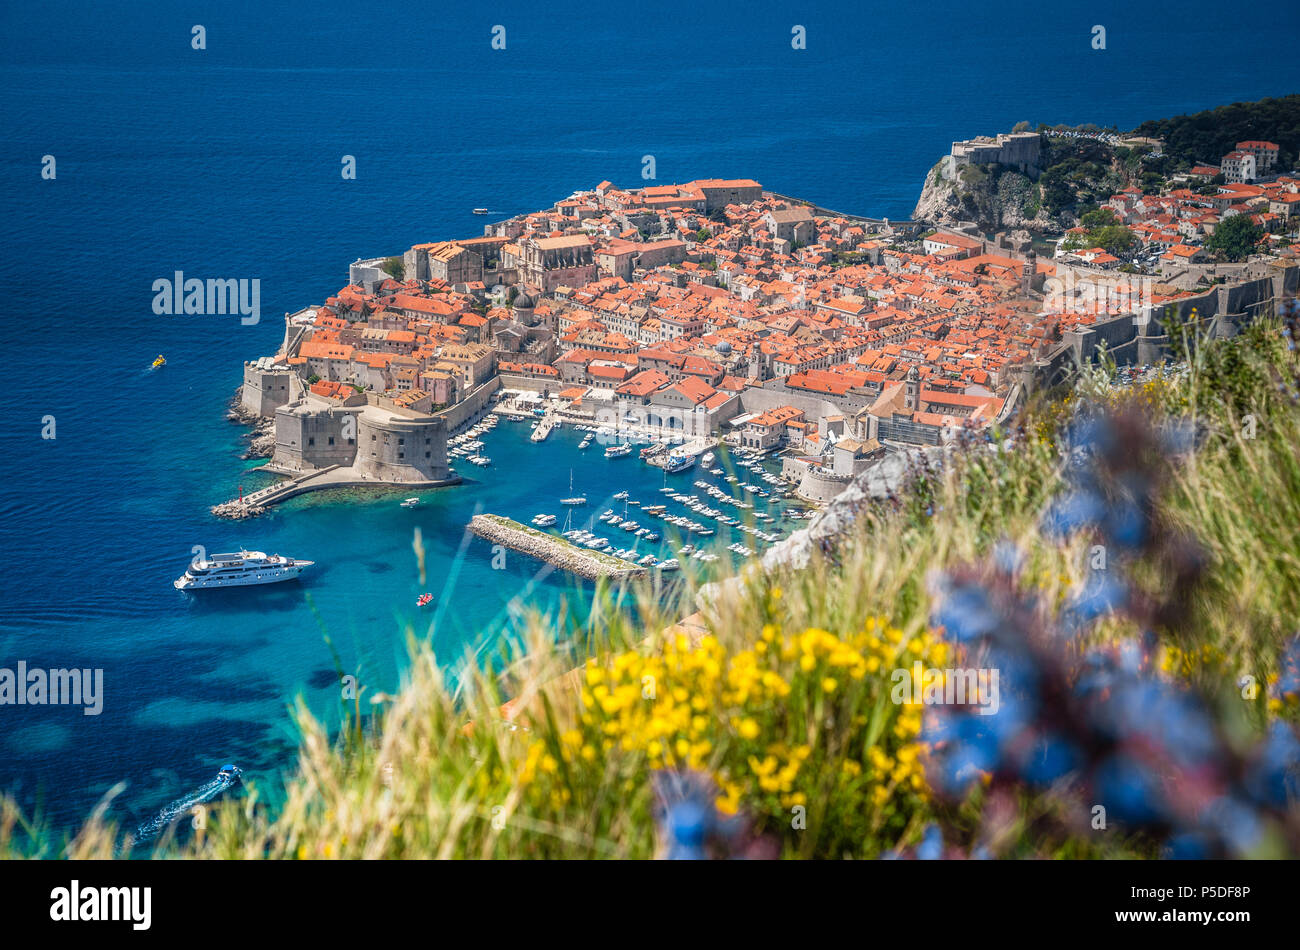 Panoramablick auf das luftbild der Altstadt von Dubrovnik, eines der bekanntesten touristischen Destinationen im Mittelmeer, von Srd Berg Stockfoto